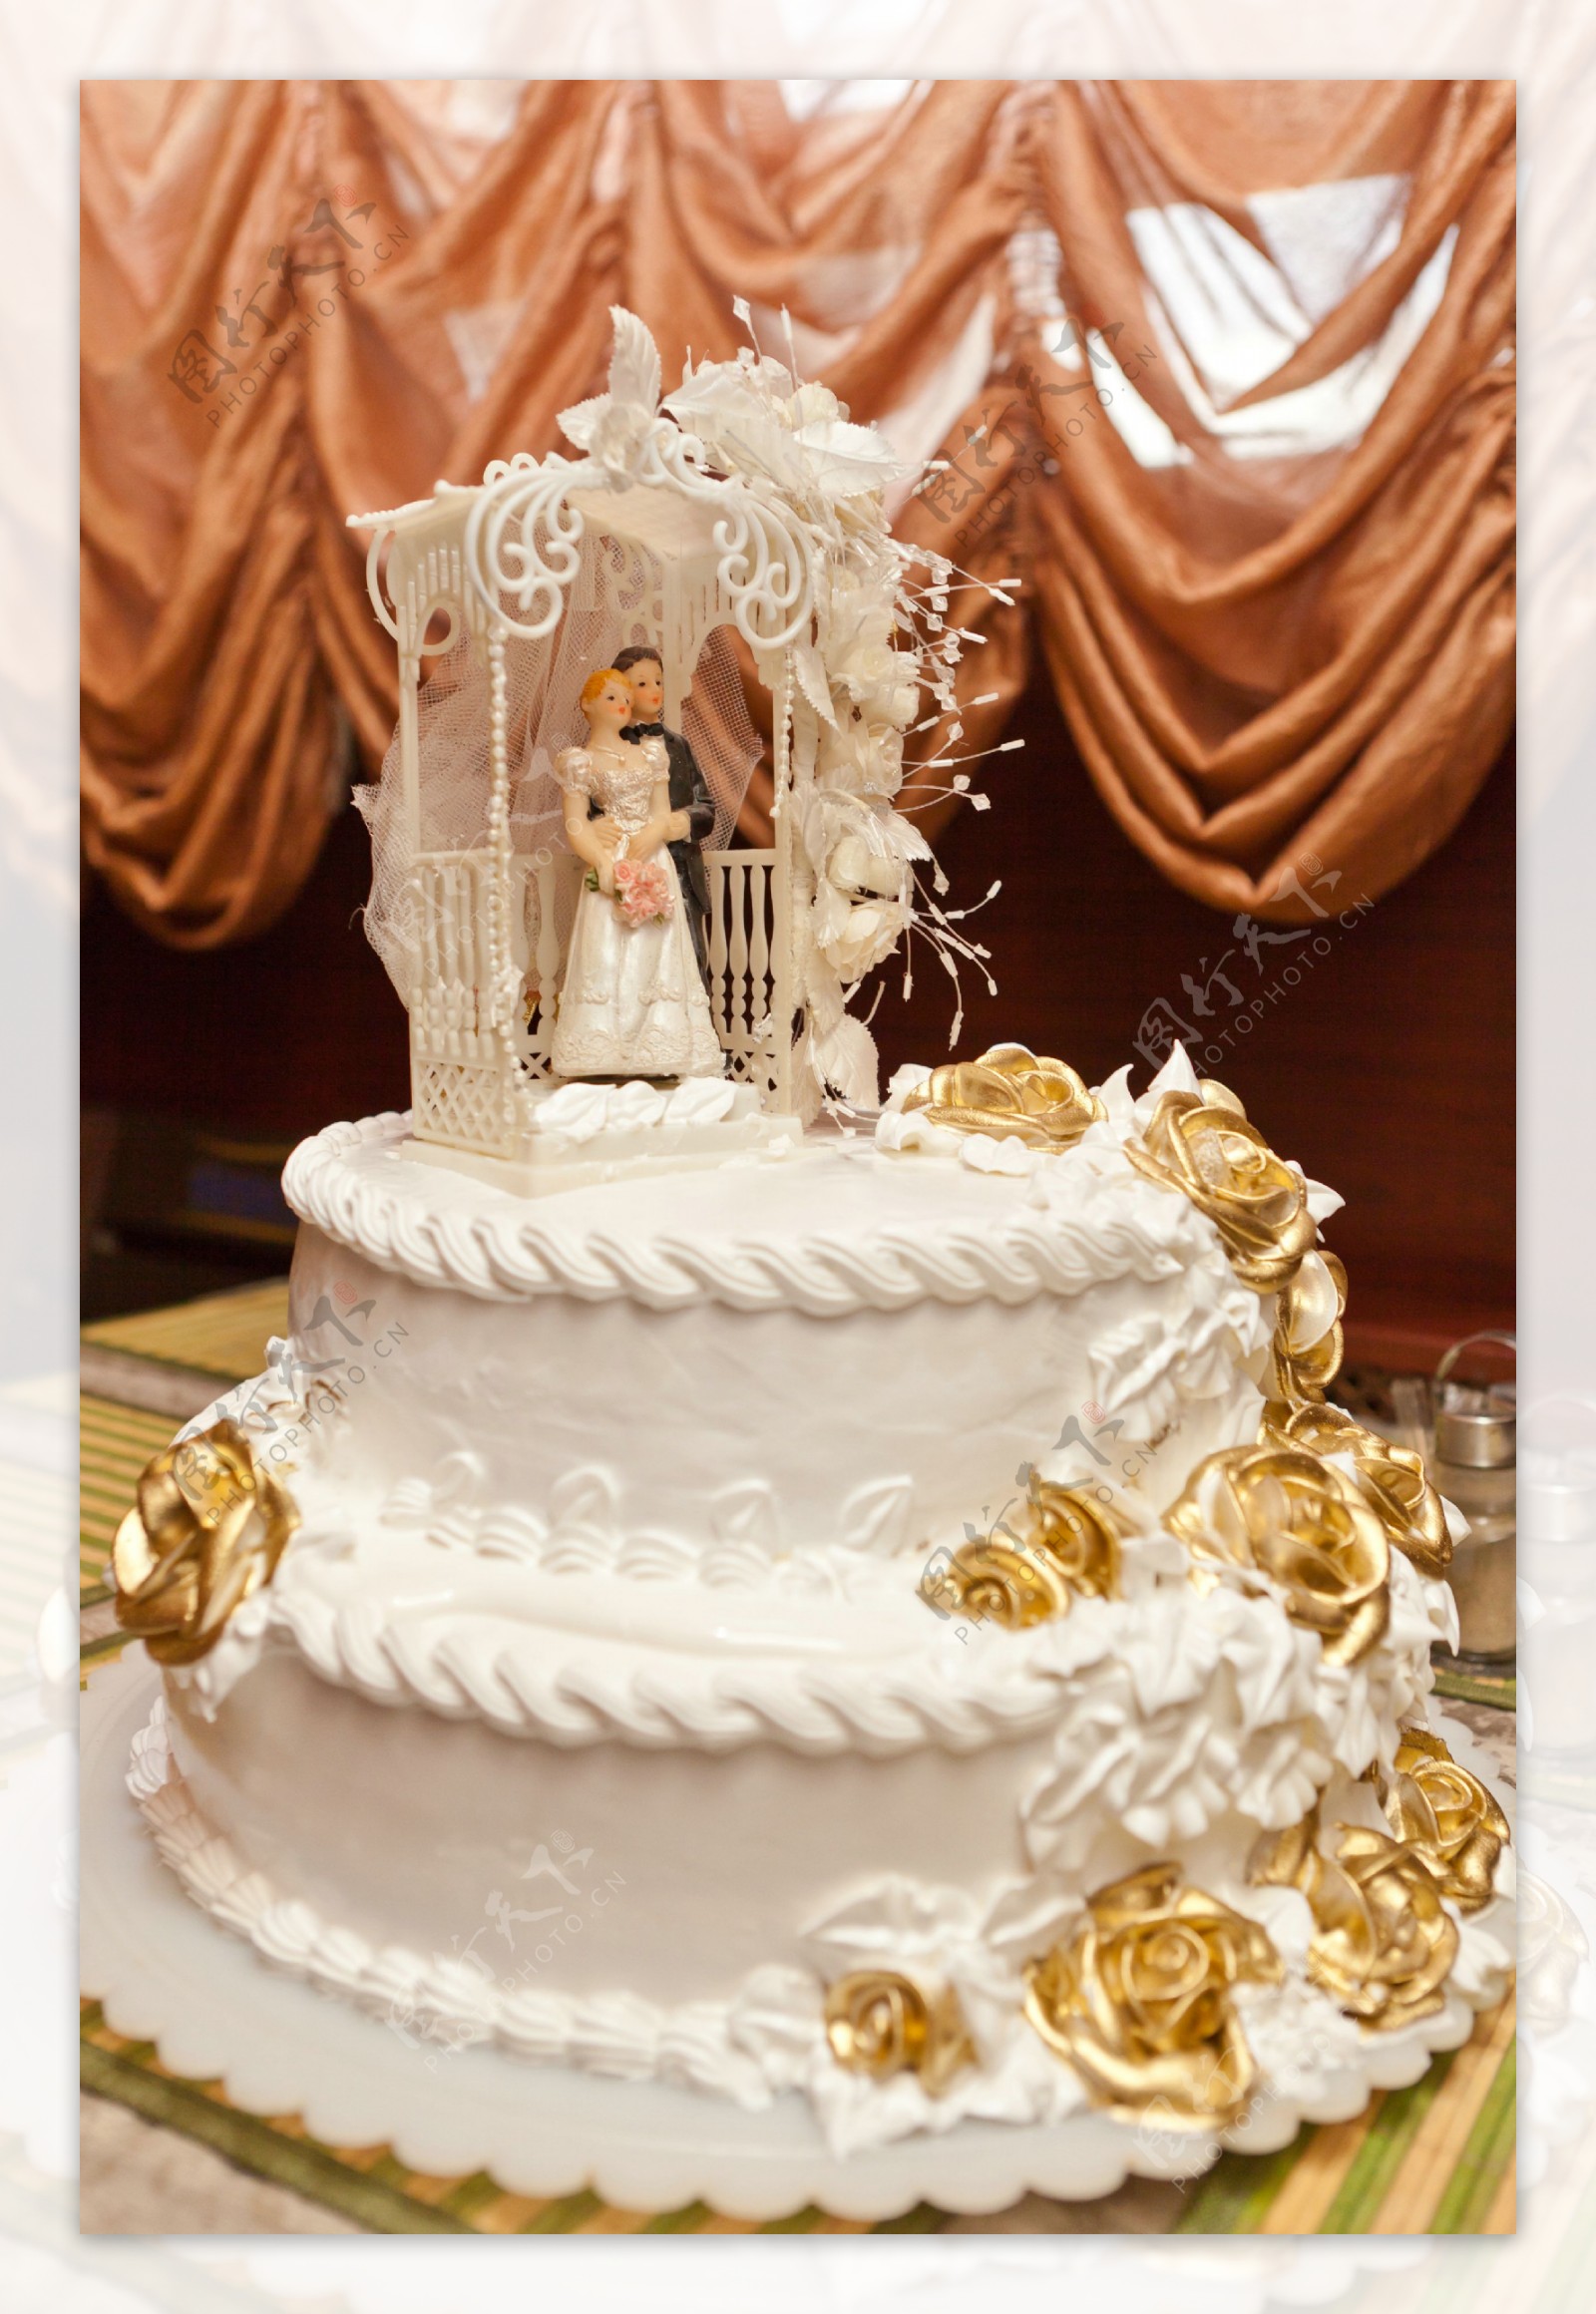 精美的结婚蛋糕图片